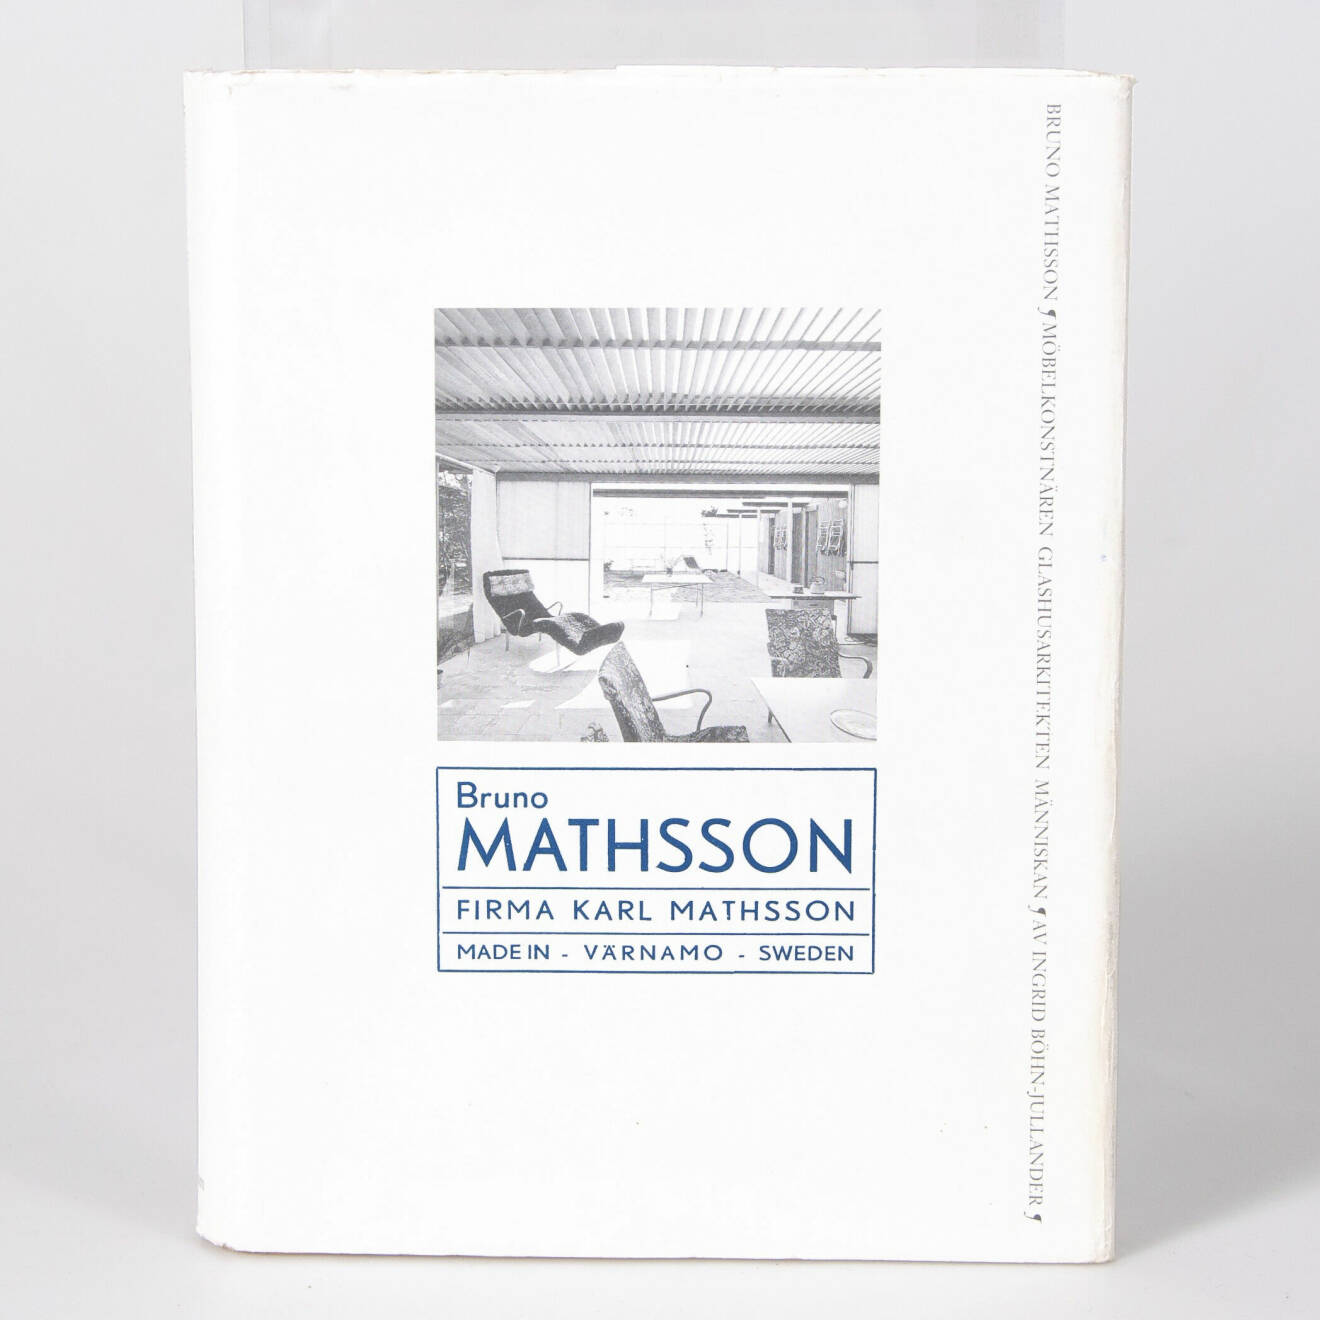 Ett exemplar av boken om Bruno Mathsson klubbades för 450kr (600) hos Laholms Auktionskammare i våras.